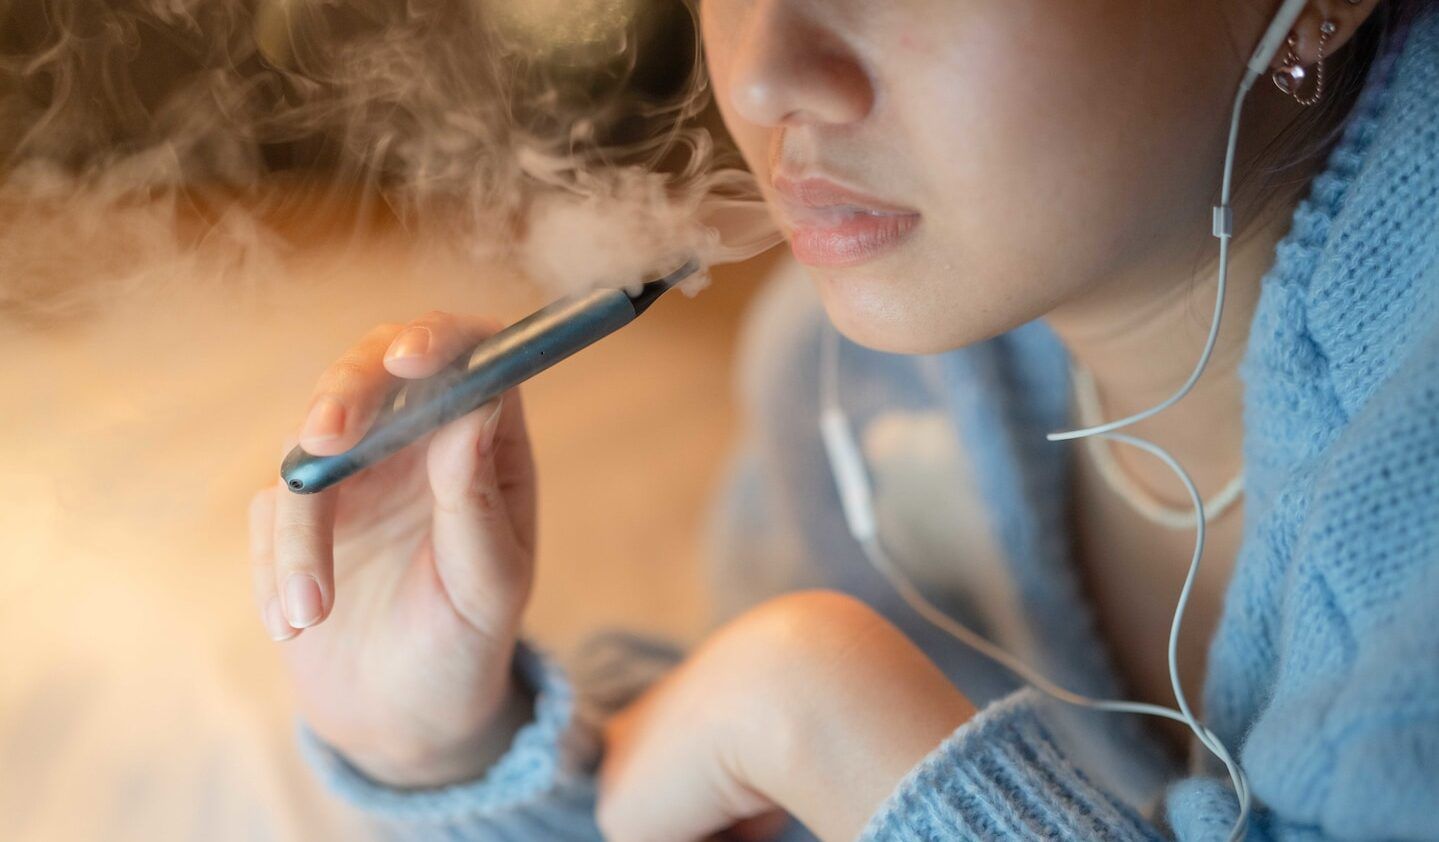 Australia to ban recreational vaping in e-cigarette crackdown